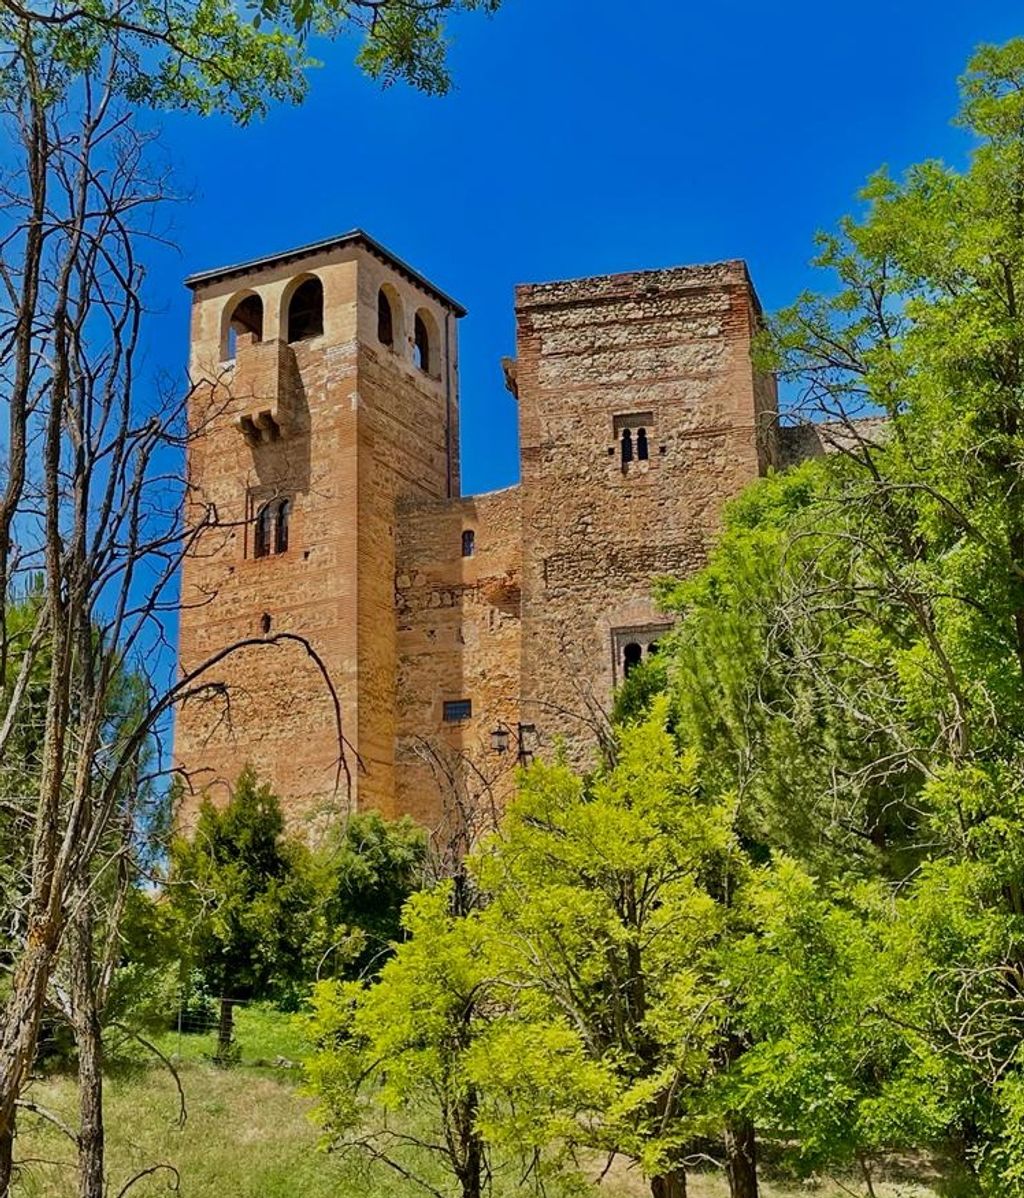 El castillo se encuentra cerca de Sepúlveda y data del siglo VIII.